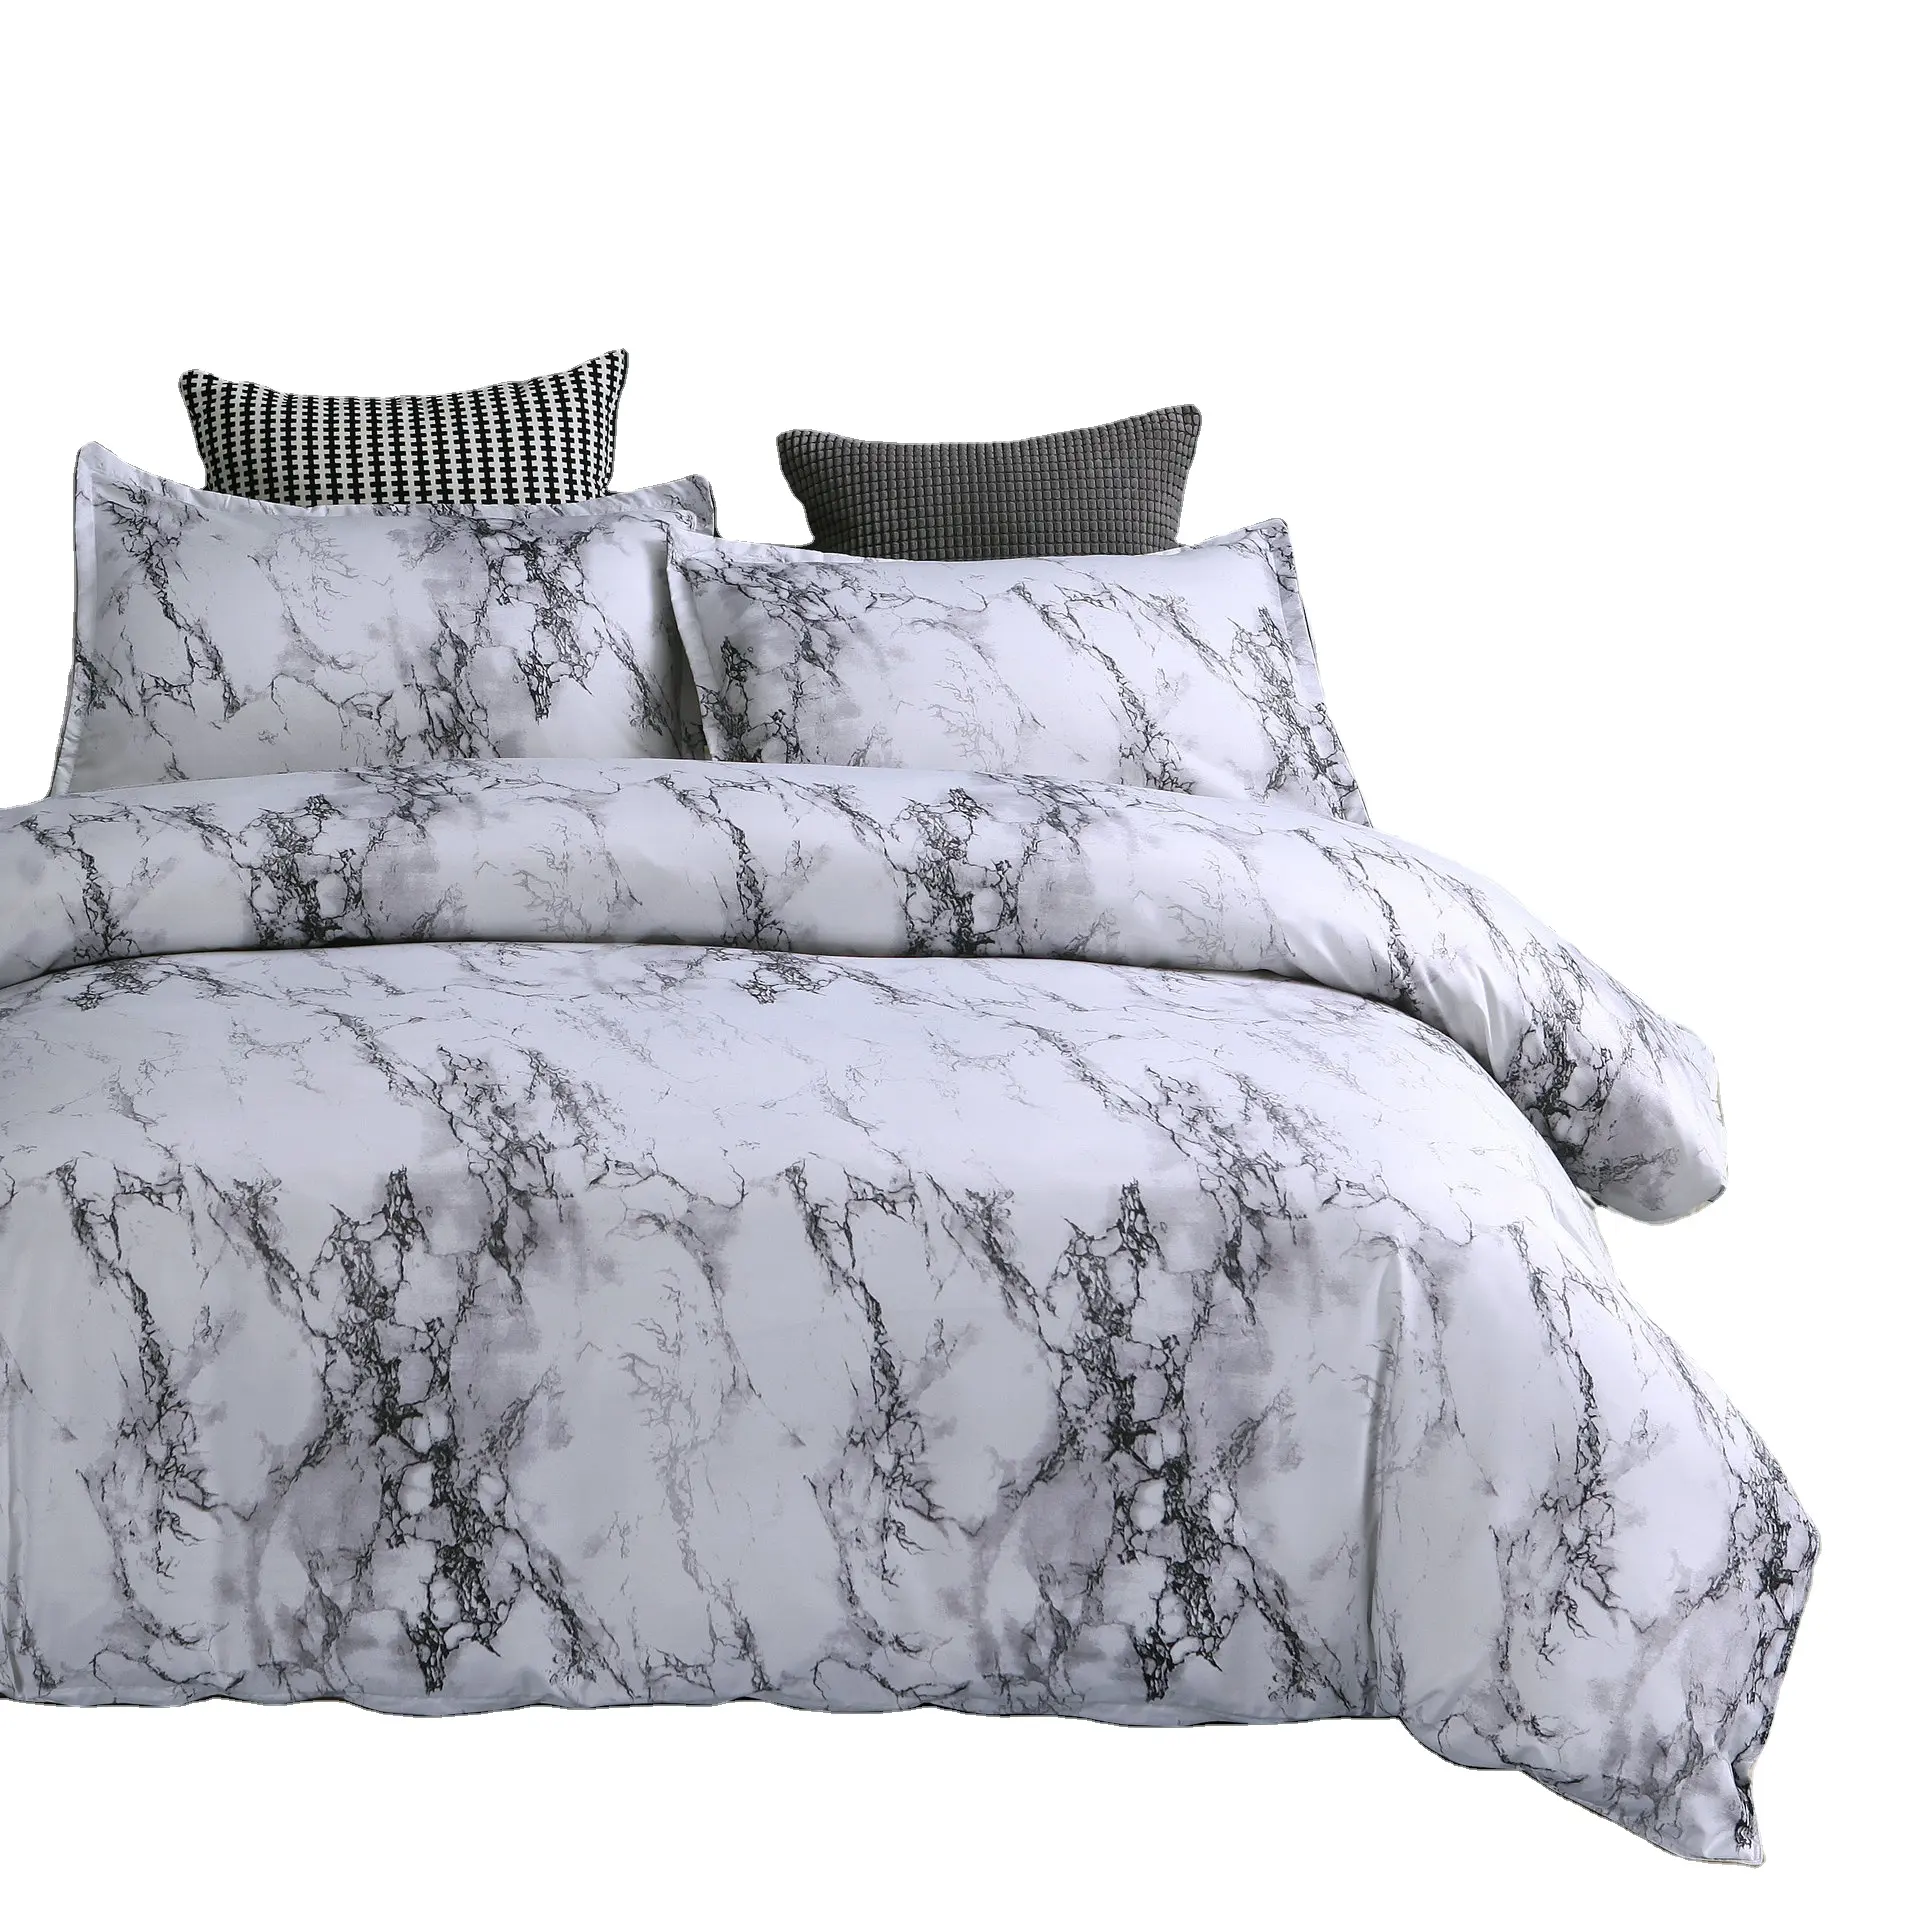 Parure de lit imprimée, ensemble de luxe en marbre 100% coton, avec housse de couette, vente directe depuis l'usine